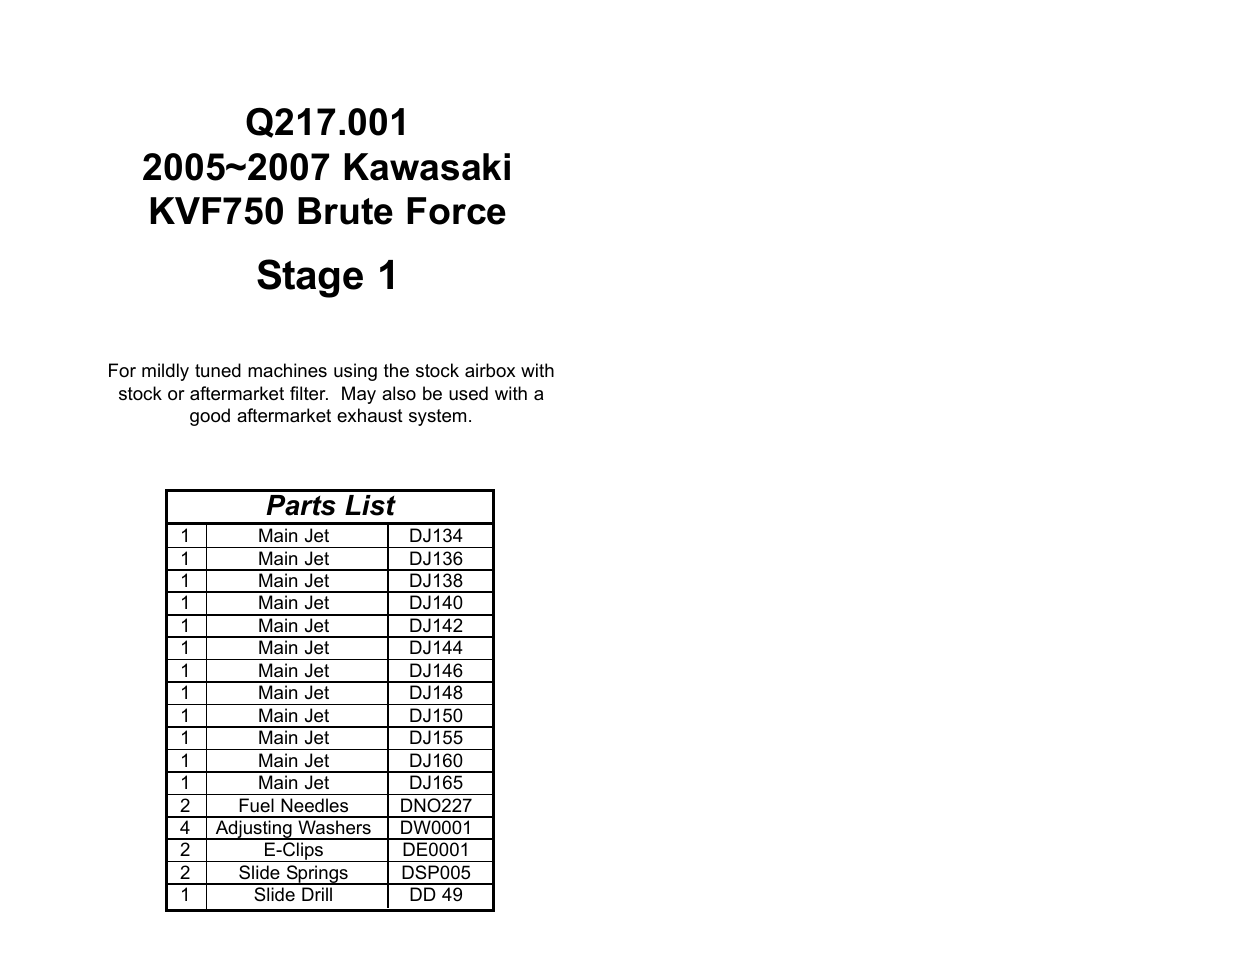 DynoJet Jet Kit for Kawasaki Brute Force 750 (05-07)